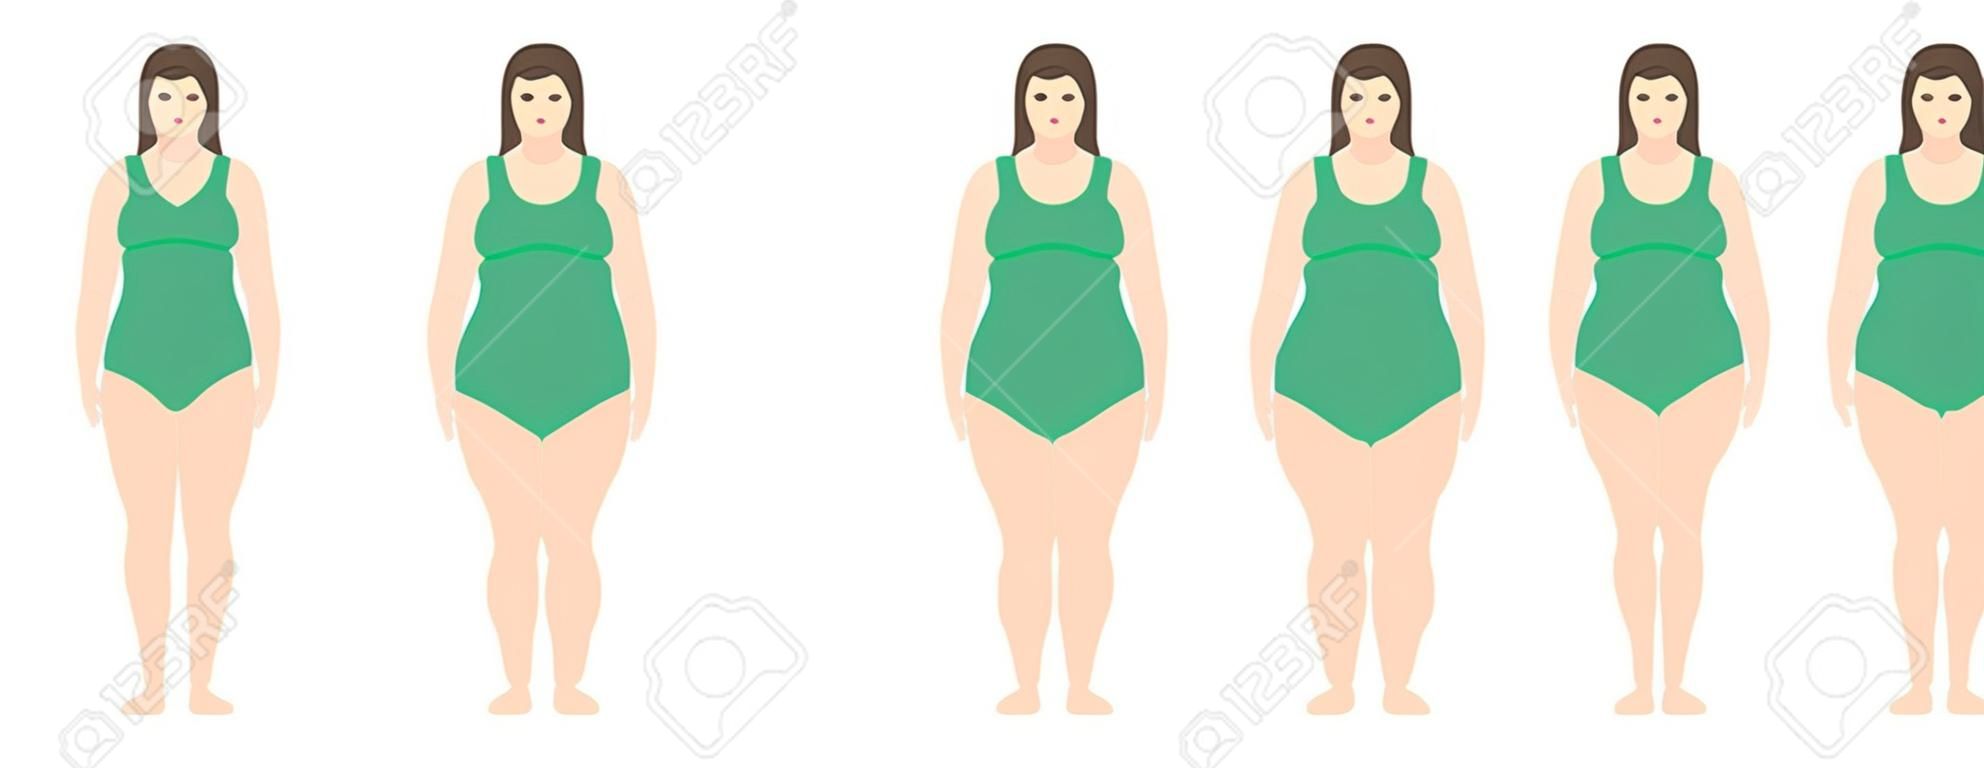 Ilustracja wektorowa kobiet o różnej wadze od anoreksji do skrajnej otyłości. Wskaźnik masy ciała, koncepcja utraty wagi.